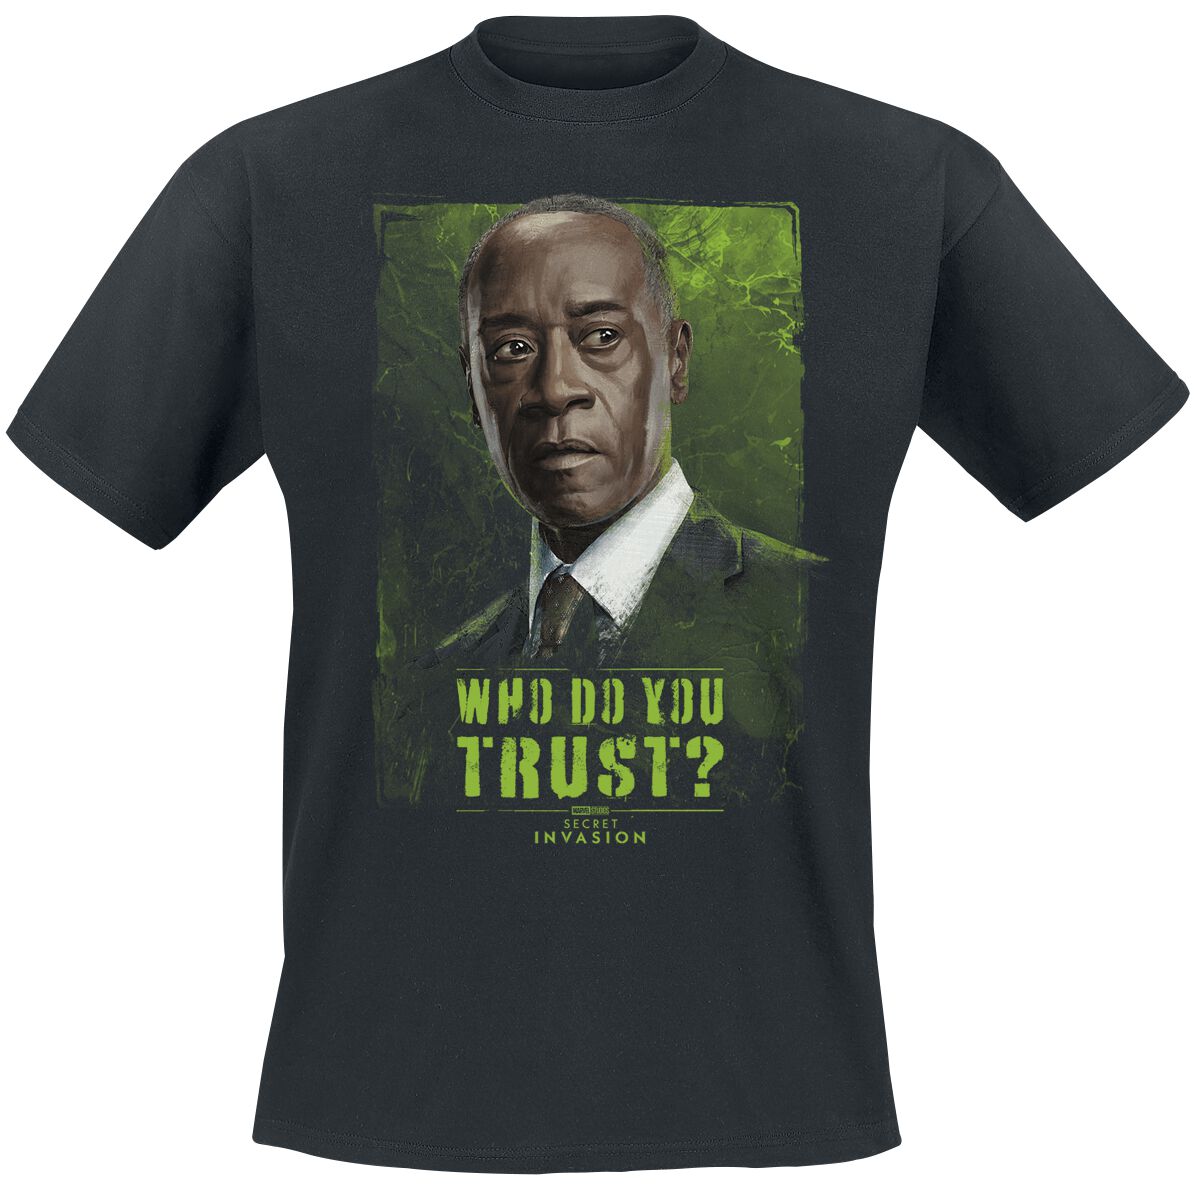 Secret Invasion - Marvel T-Shirt - Who Do You Trust? James - S bis 3XL - für Männer - Größe M - schwarz  - EMP exklusives Merchandise!